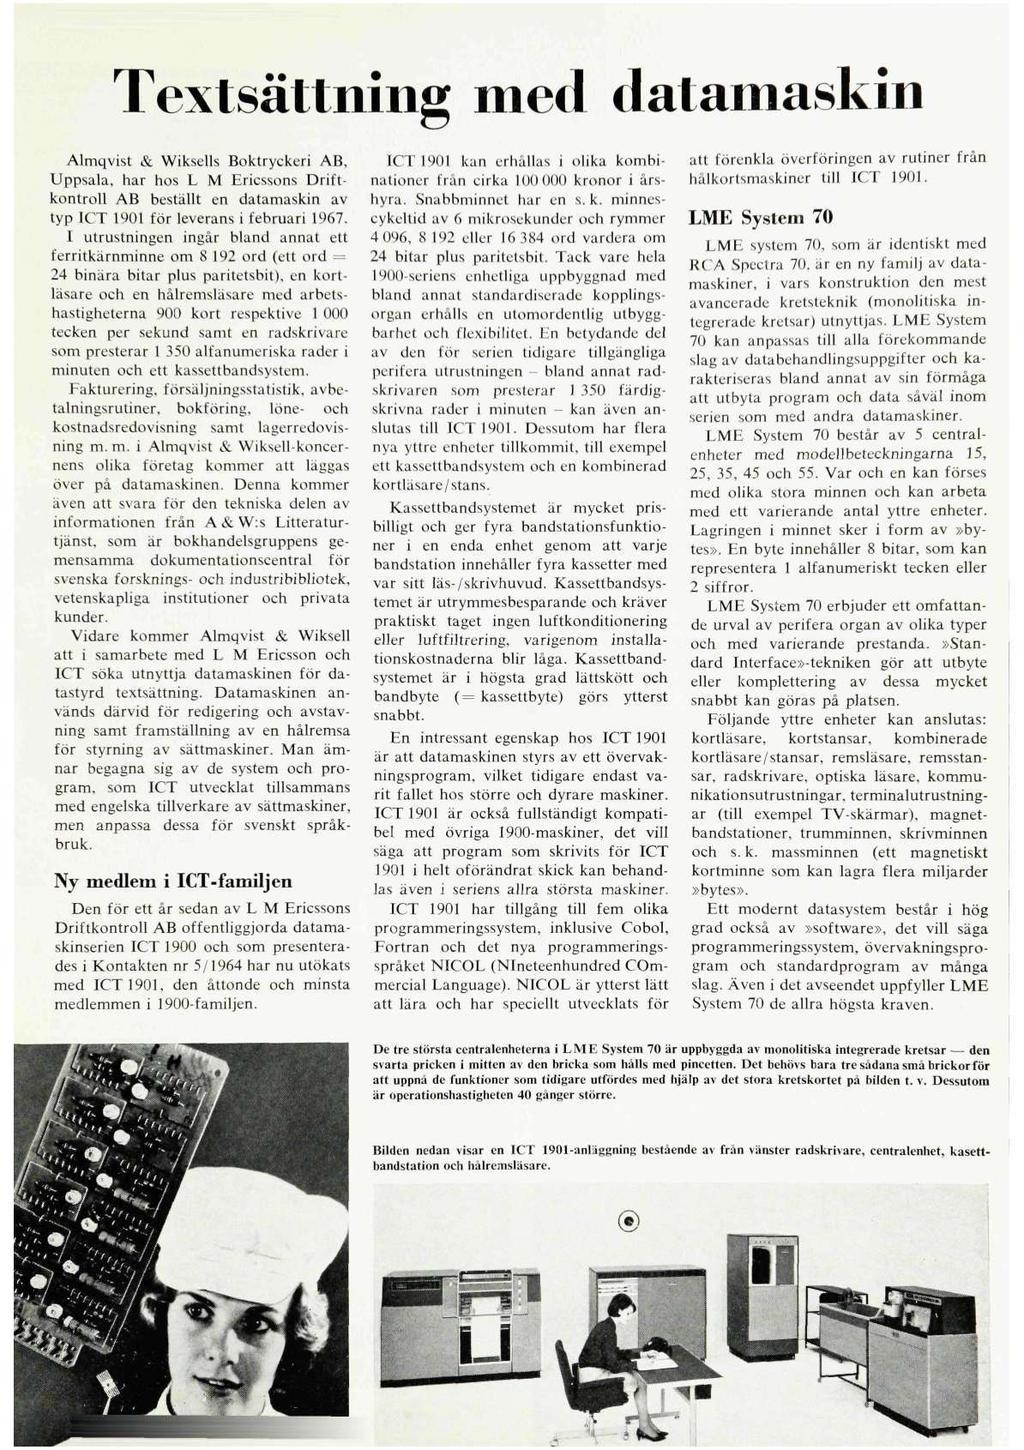 Textsättning med datamaskin Almqvist & Wiksells Boktryckeri AB, Uppsala, har hos L M Ericssons Driftkontroll AB beställt en datamaskin av typ ICT 1901 för leverans i februari 1967.